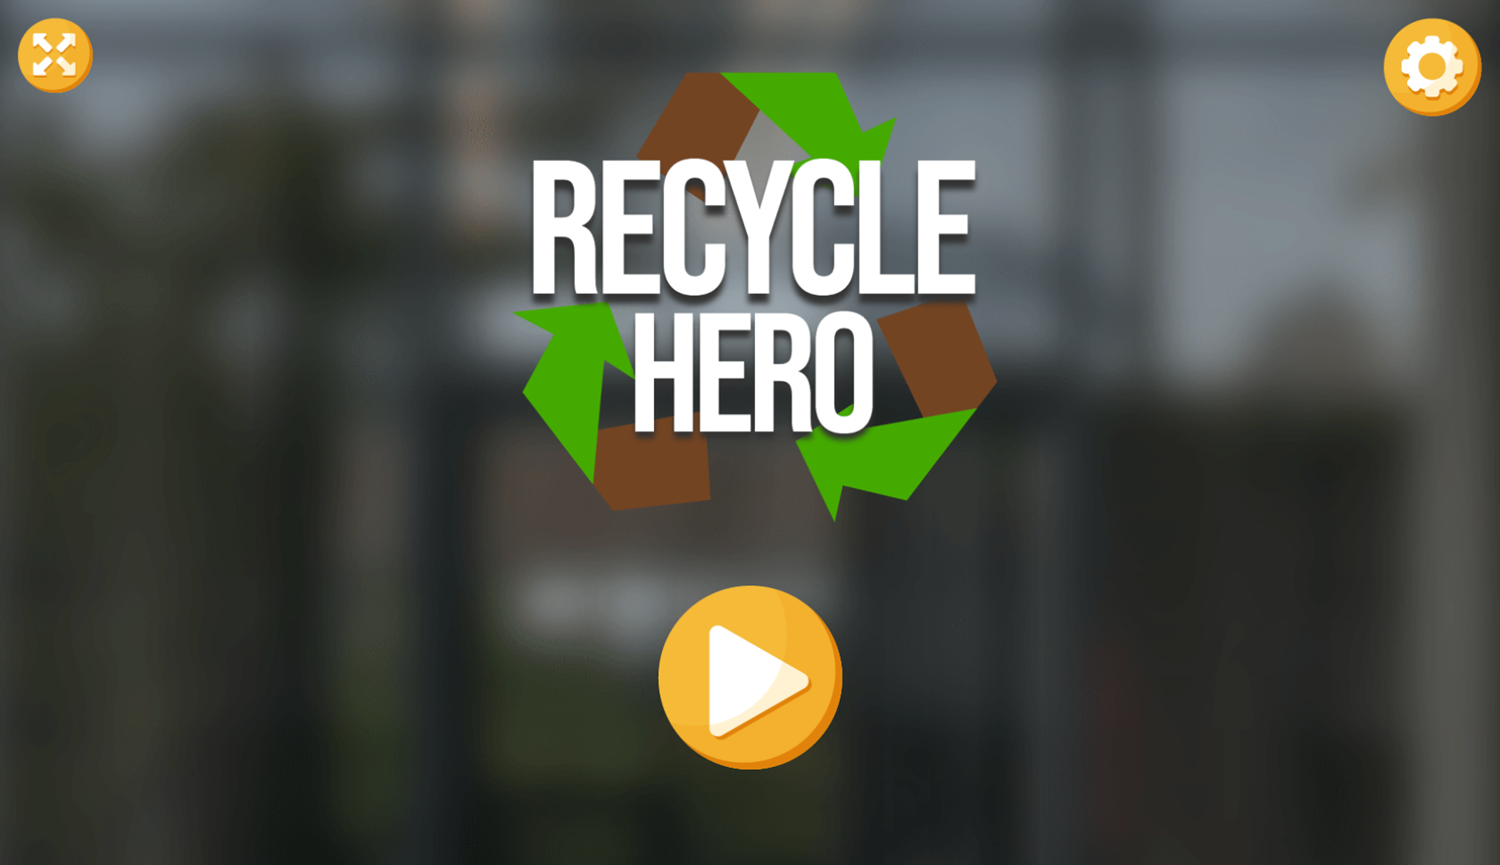 Recycling Hero Game Welcome Screen Screenshot.